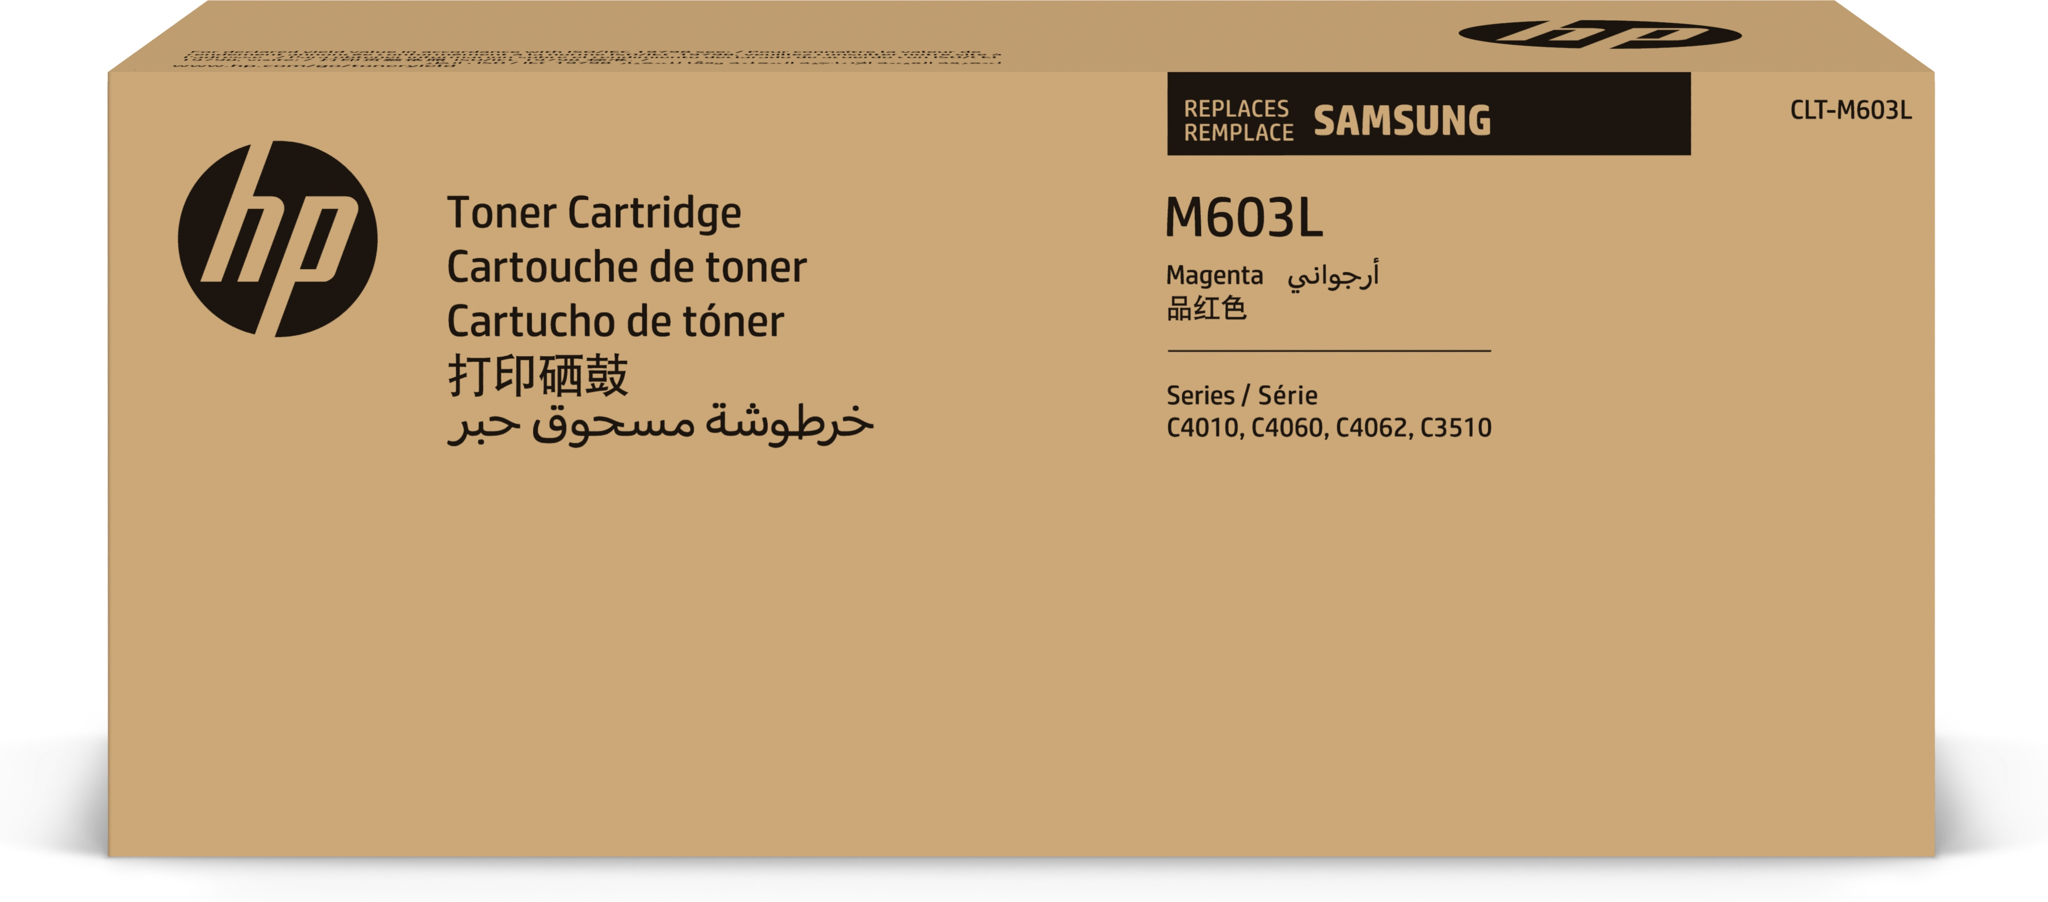 Bild von HP CLT-M603L Magenta Tonerkartusche mit hoher Reichweite - 10000 Seiten - Magenta - 1 Stück(e)